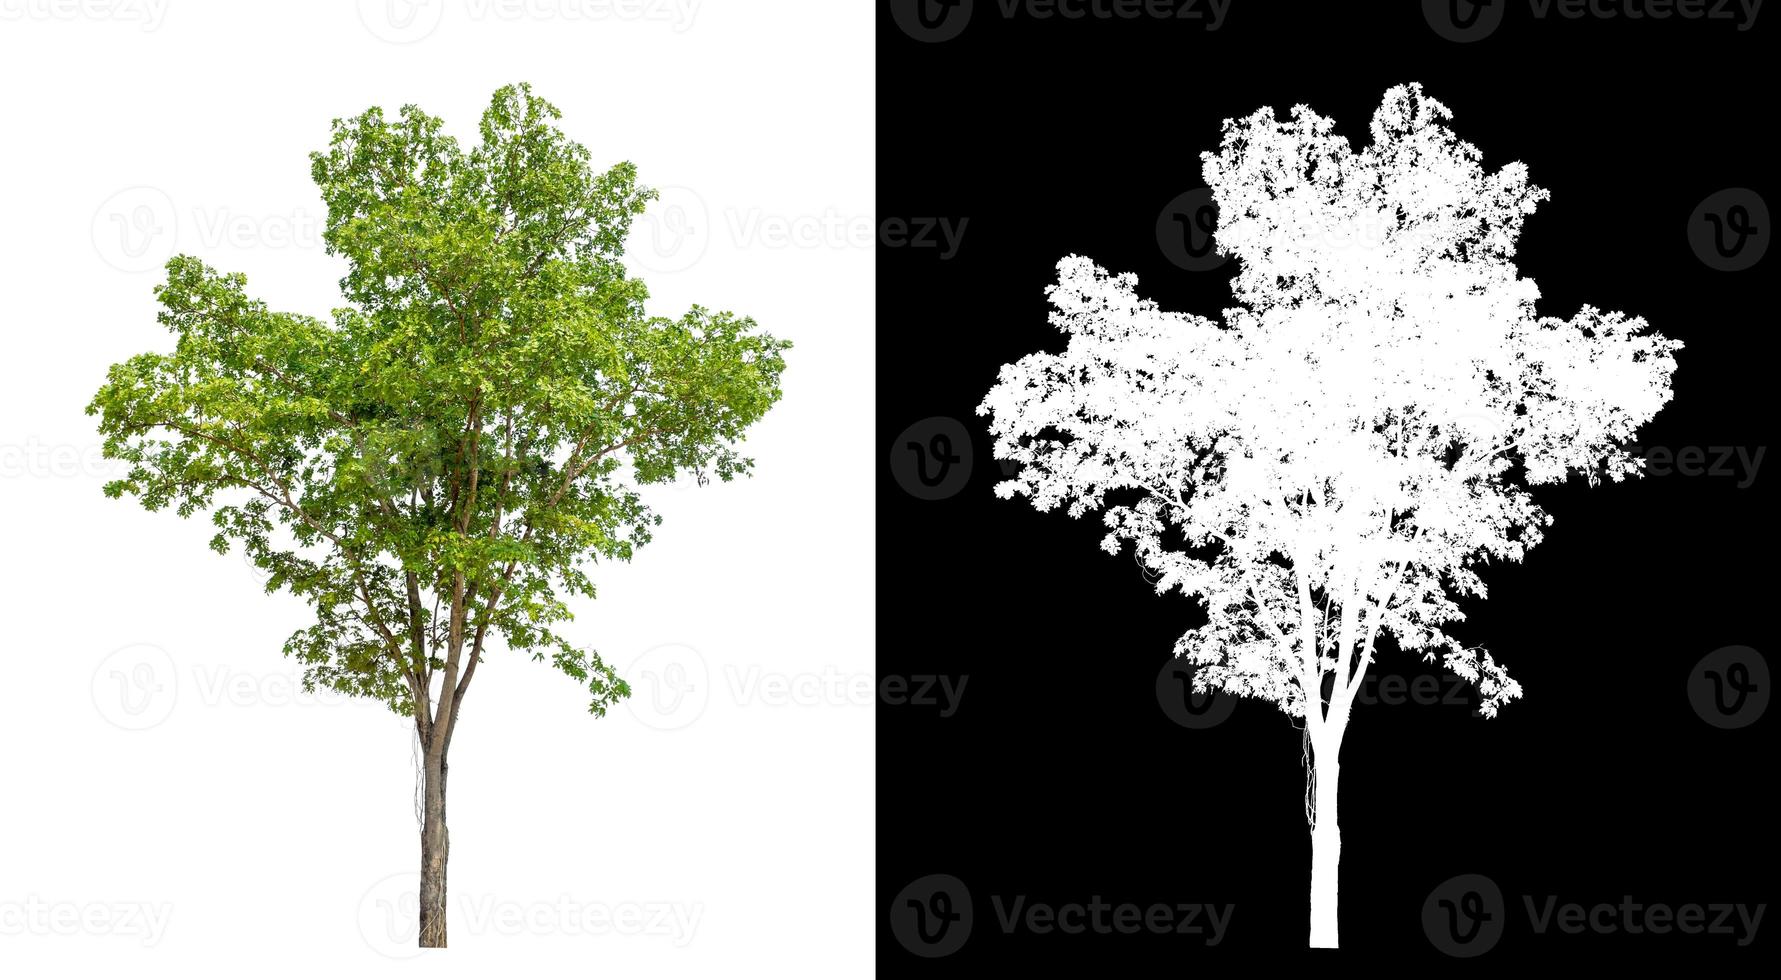 Baum auf weißem Bildhintergrund mit Beschneidungspfad, einzelner Baum mit Beschneidungspfad und Alphakanal auf schwarzem Hintergrund foto